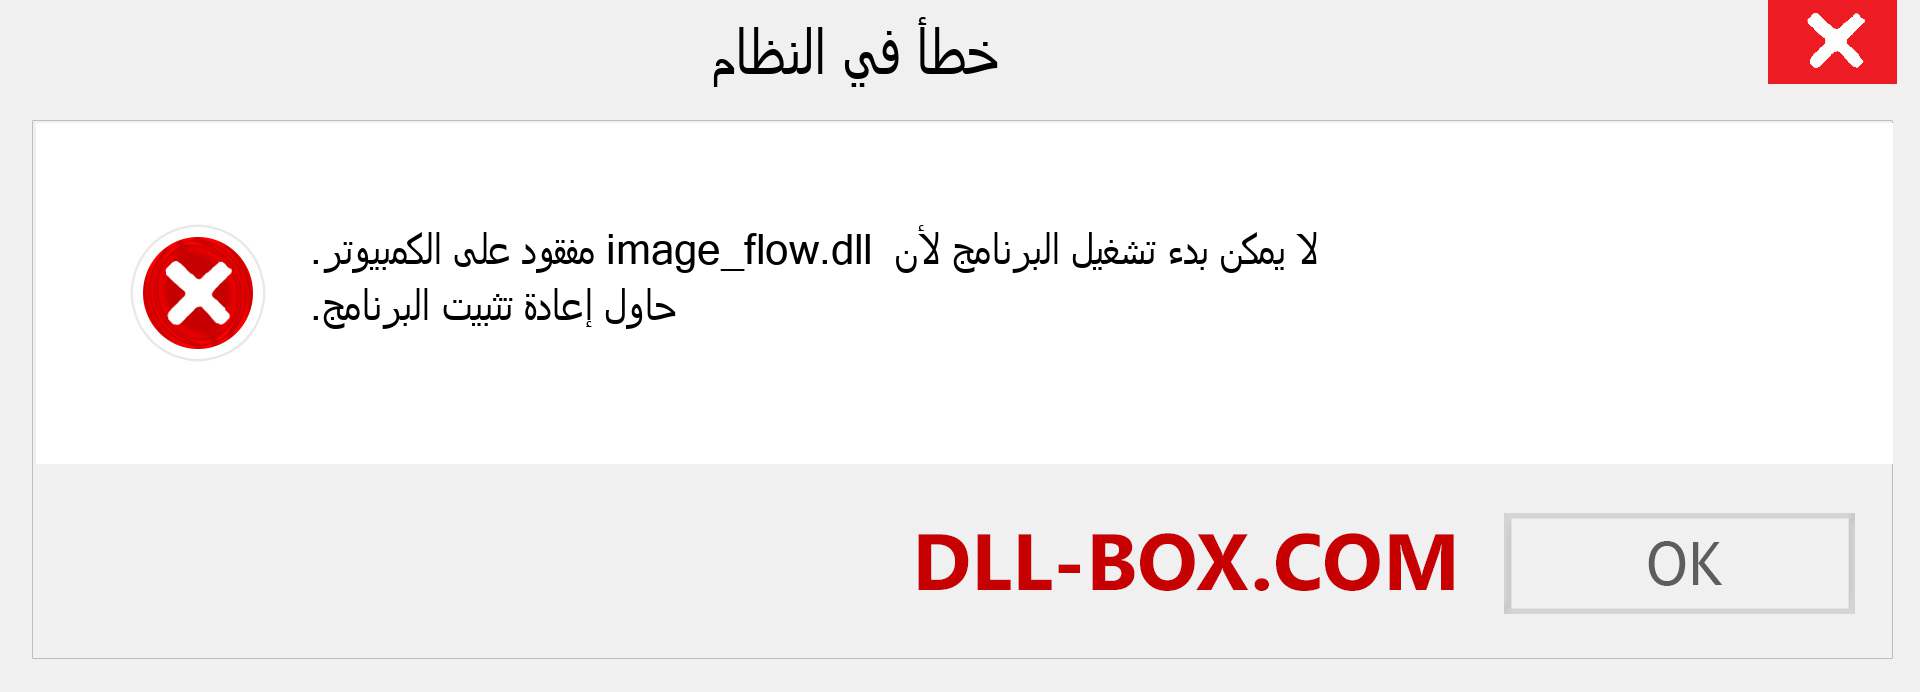 ملف image_flow.dll مفقود ؟. التنزيل لنظام التشغيل Windows 7 و 8 و 10 - إصلاح خطأ image_flow dll المفقود على Windows والصور والصور